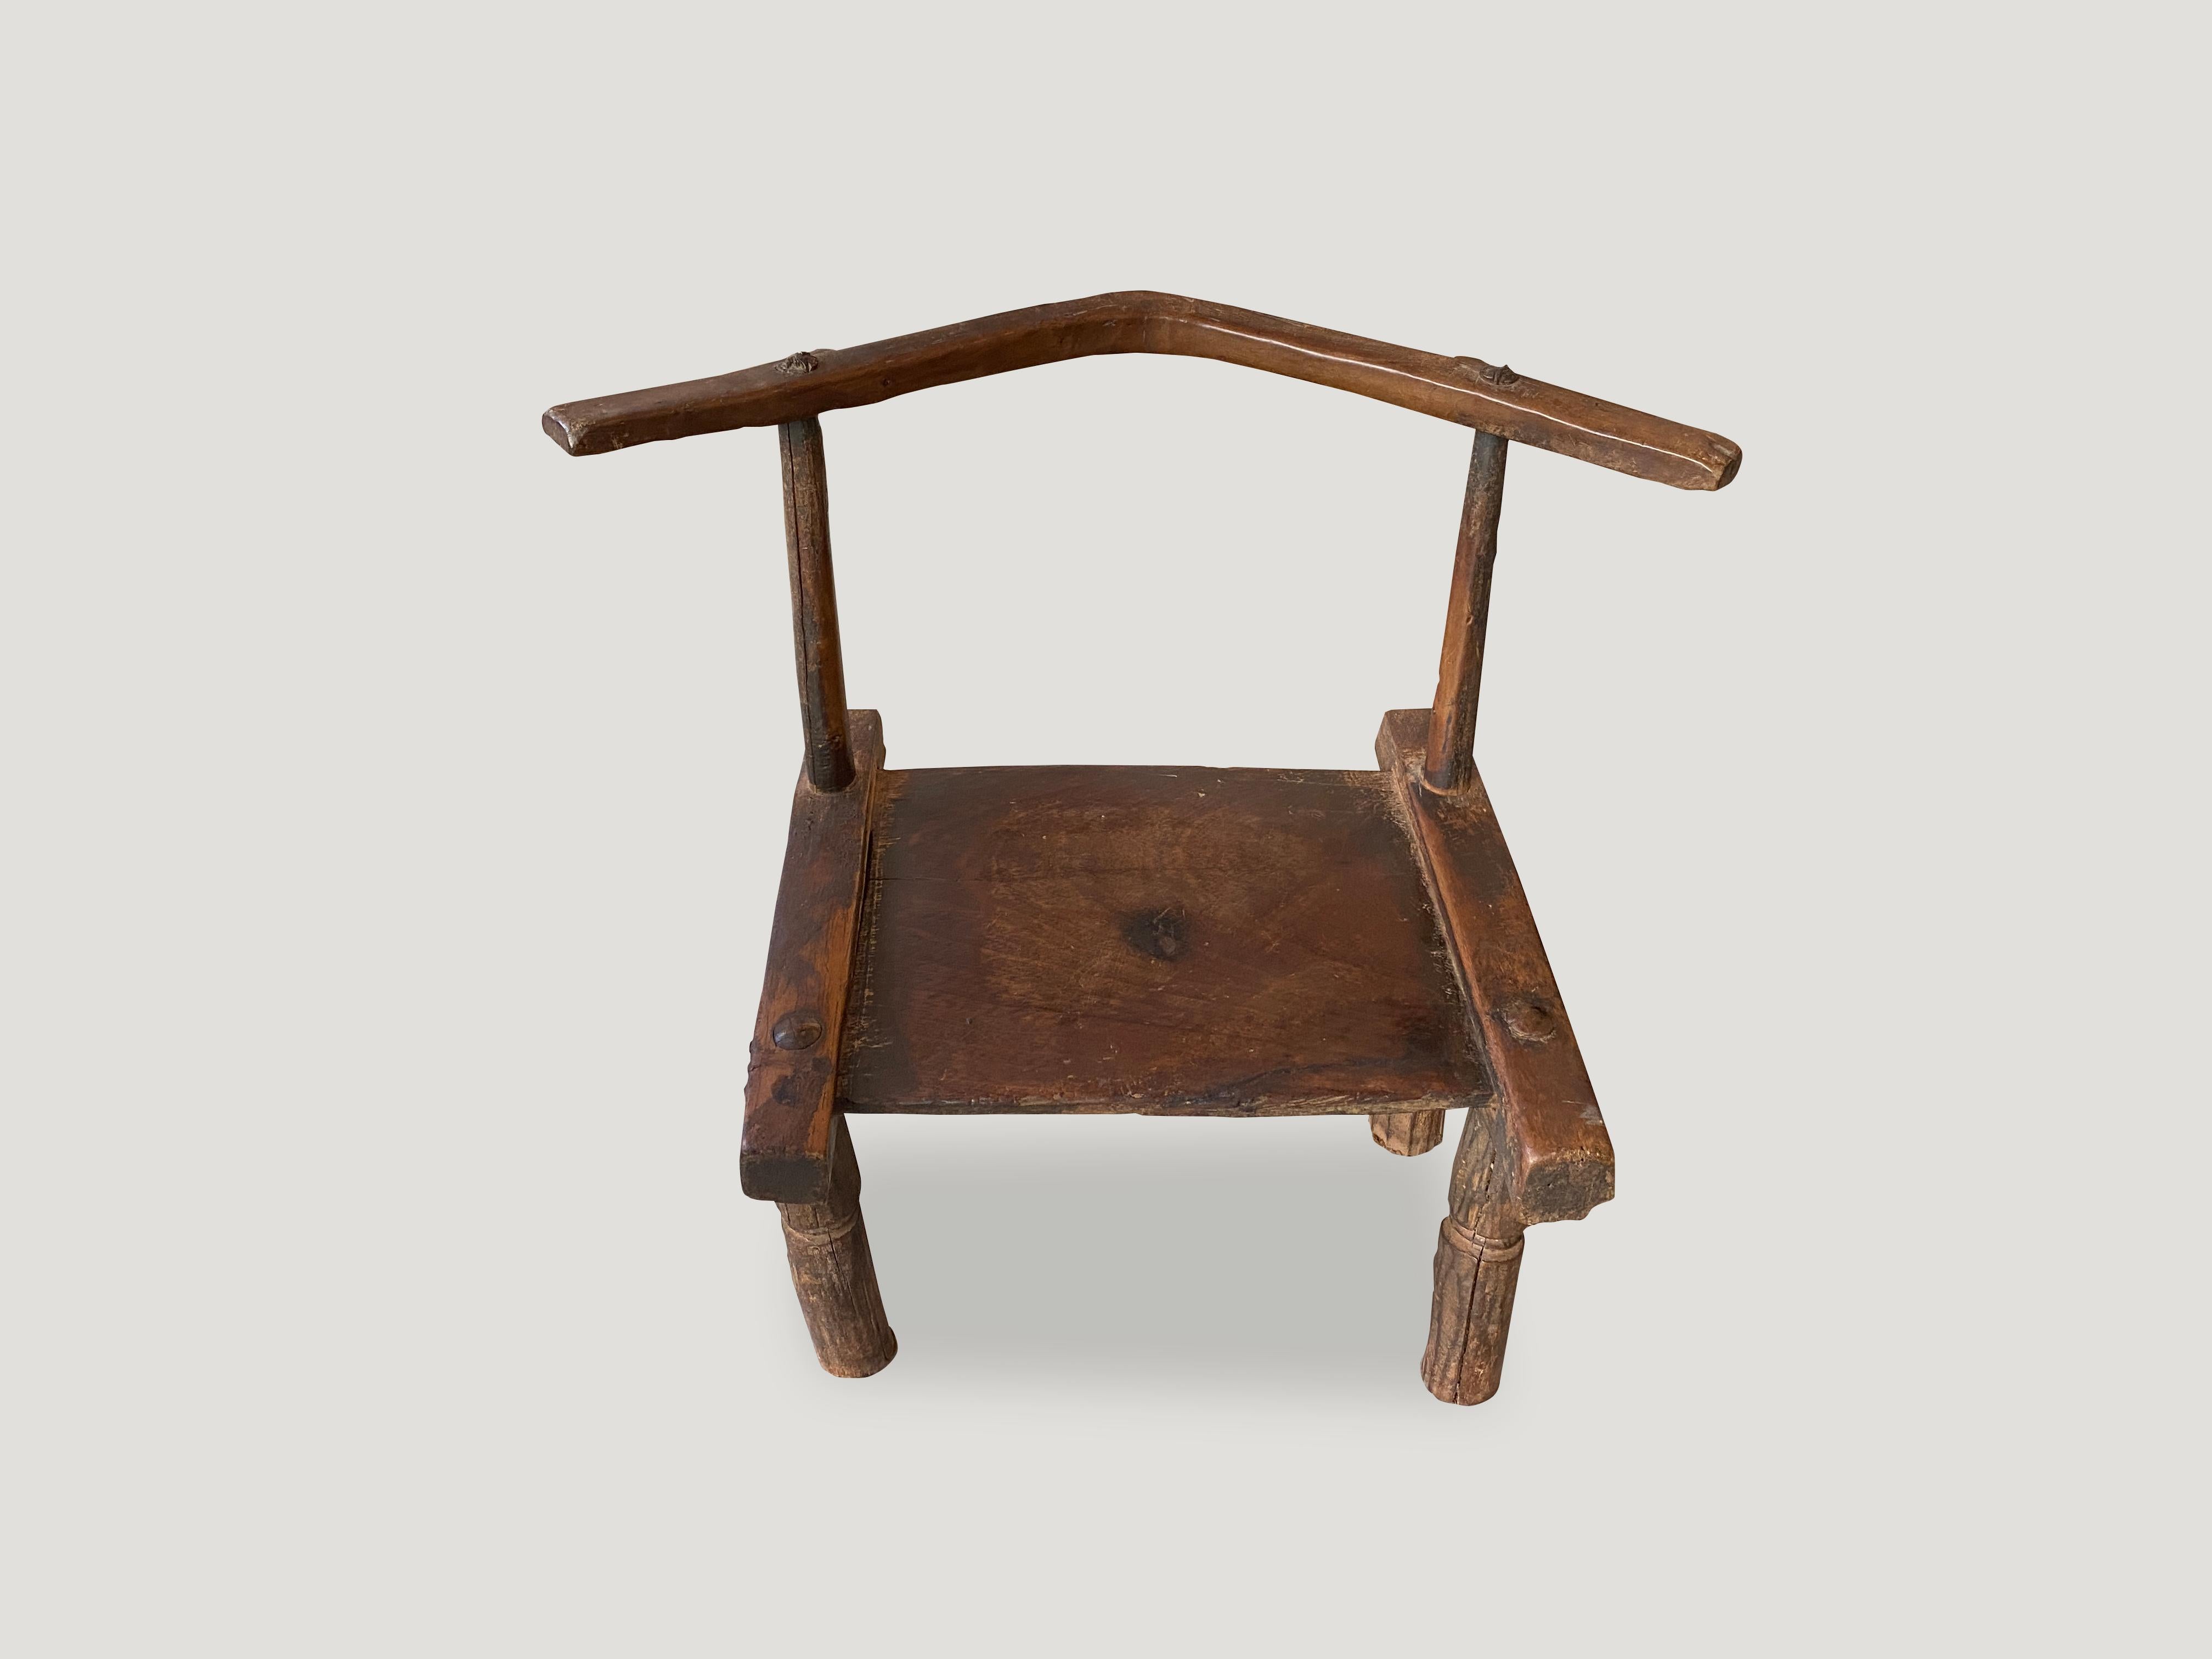 Preciosa pátina en esta silla de madera tallada a mano del siglo XIX, procedente de la Costa de Marfil de África. También puede utilizarse como mesa auxiliar baja. Una obra de arte.

Esta silla se creó siguiendo el espíritu del wabi-sabi, una